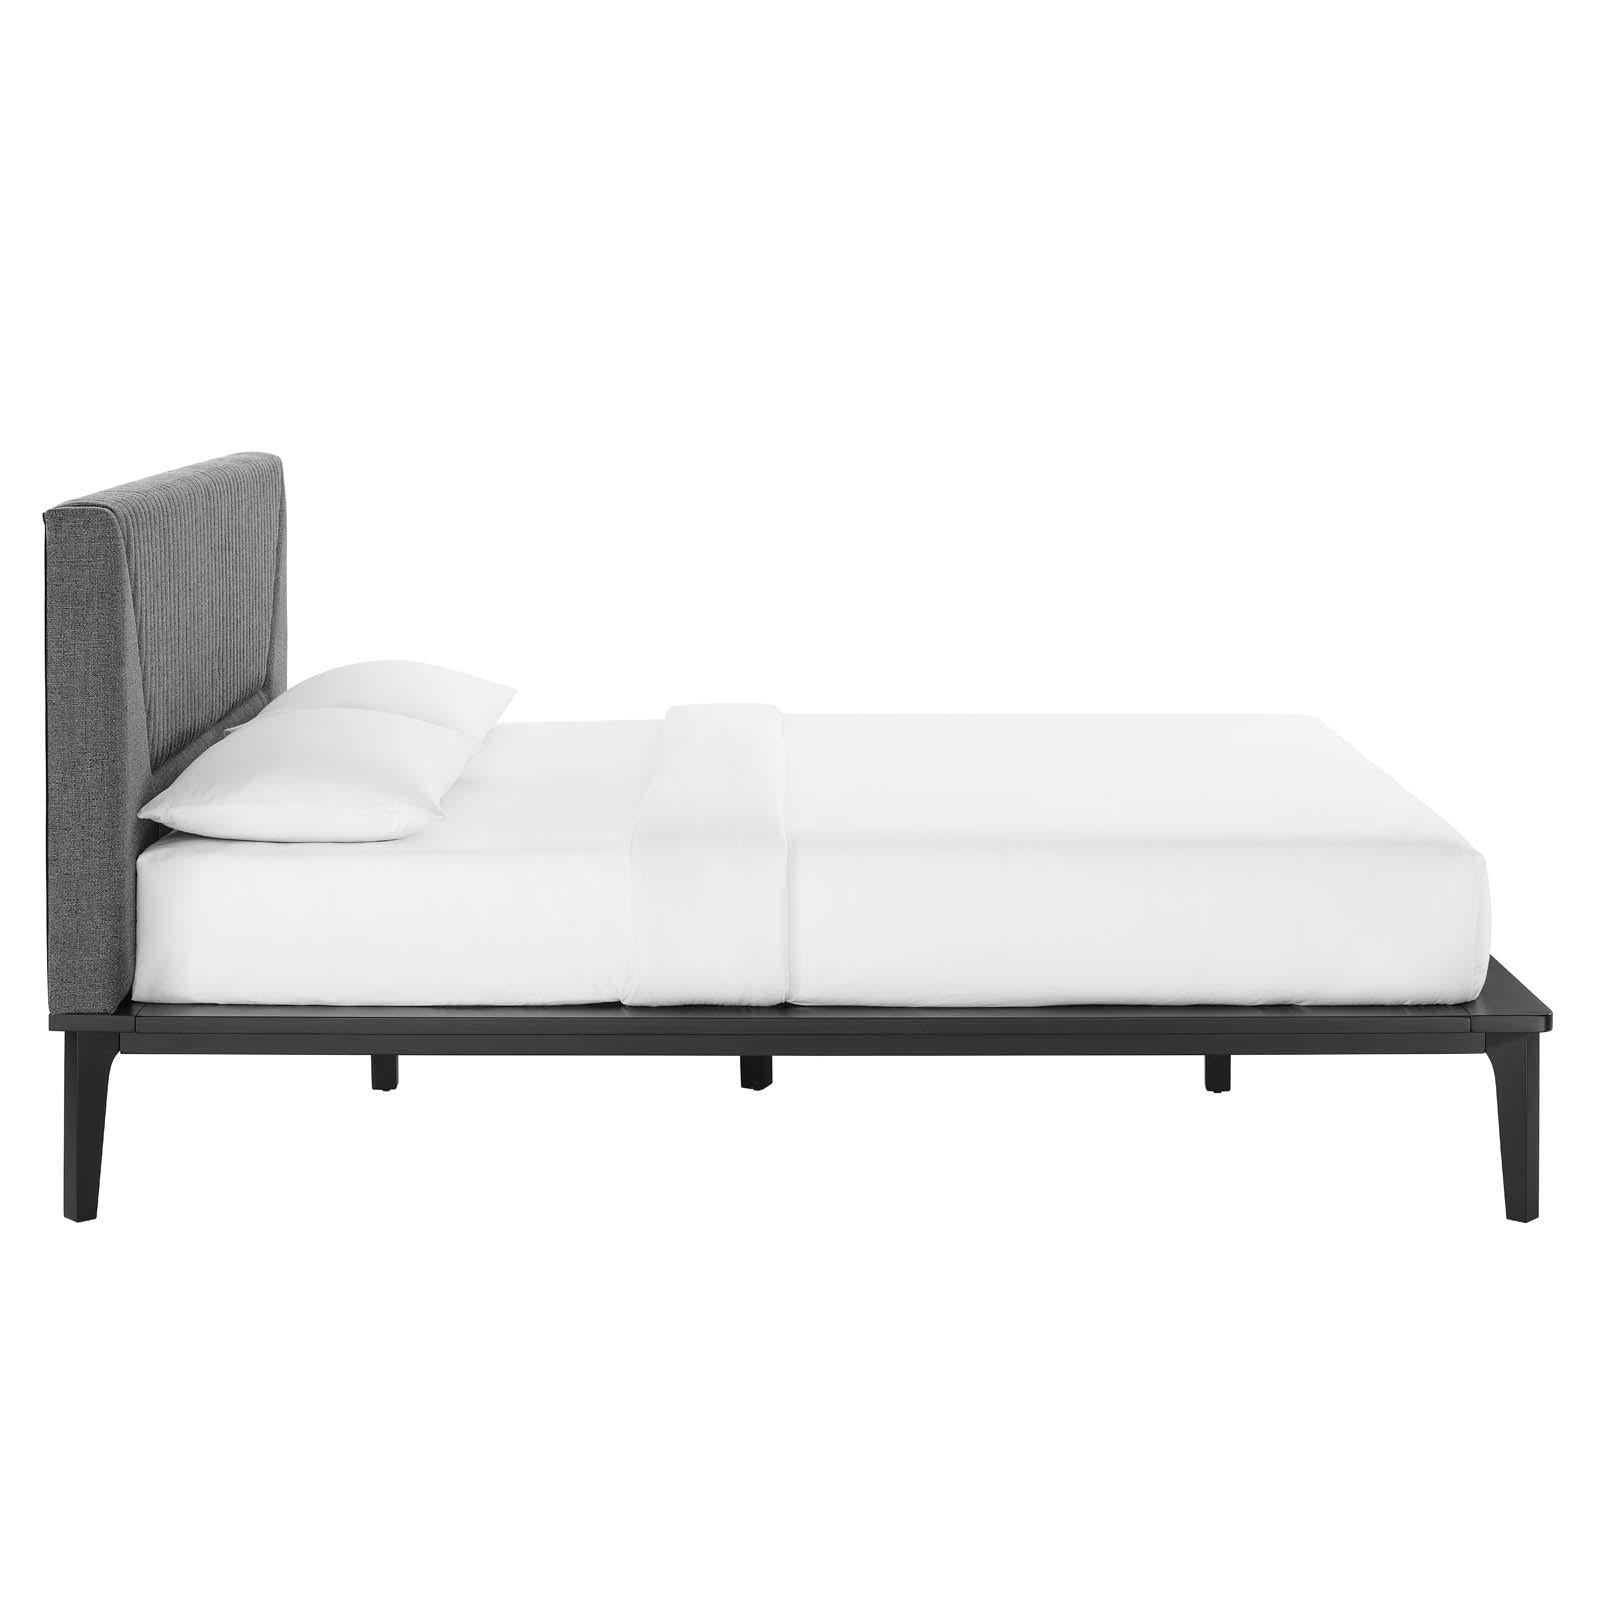 Modway Furniture Modern Dakota 5 Piece Upholstered Bedroom Set - MOD-7036